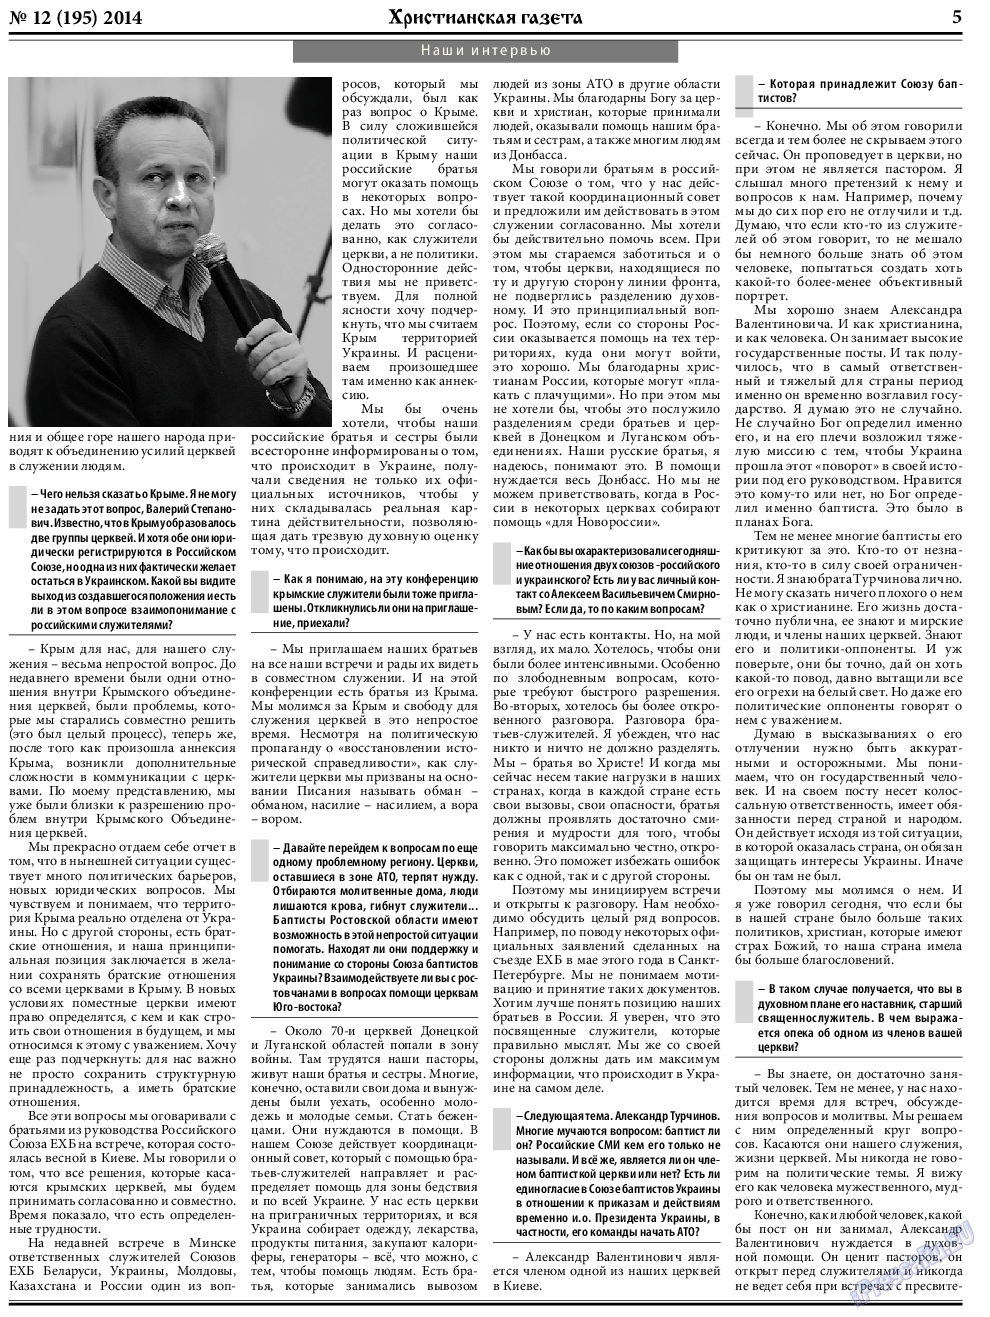 Христианская газета, газета. 2014 №12 стр.5